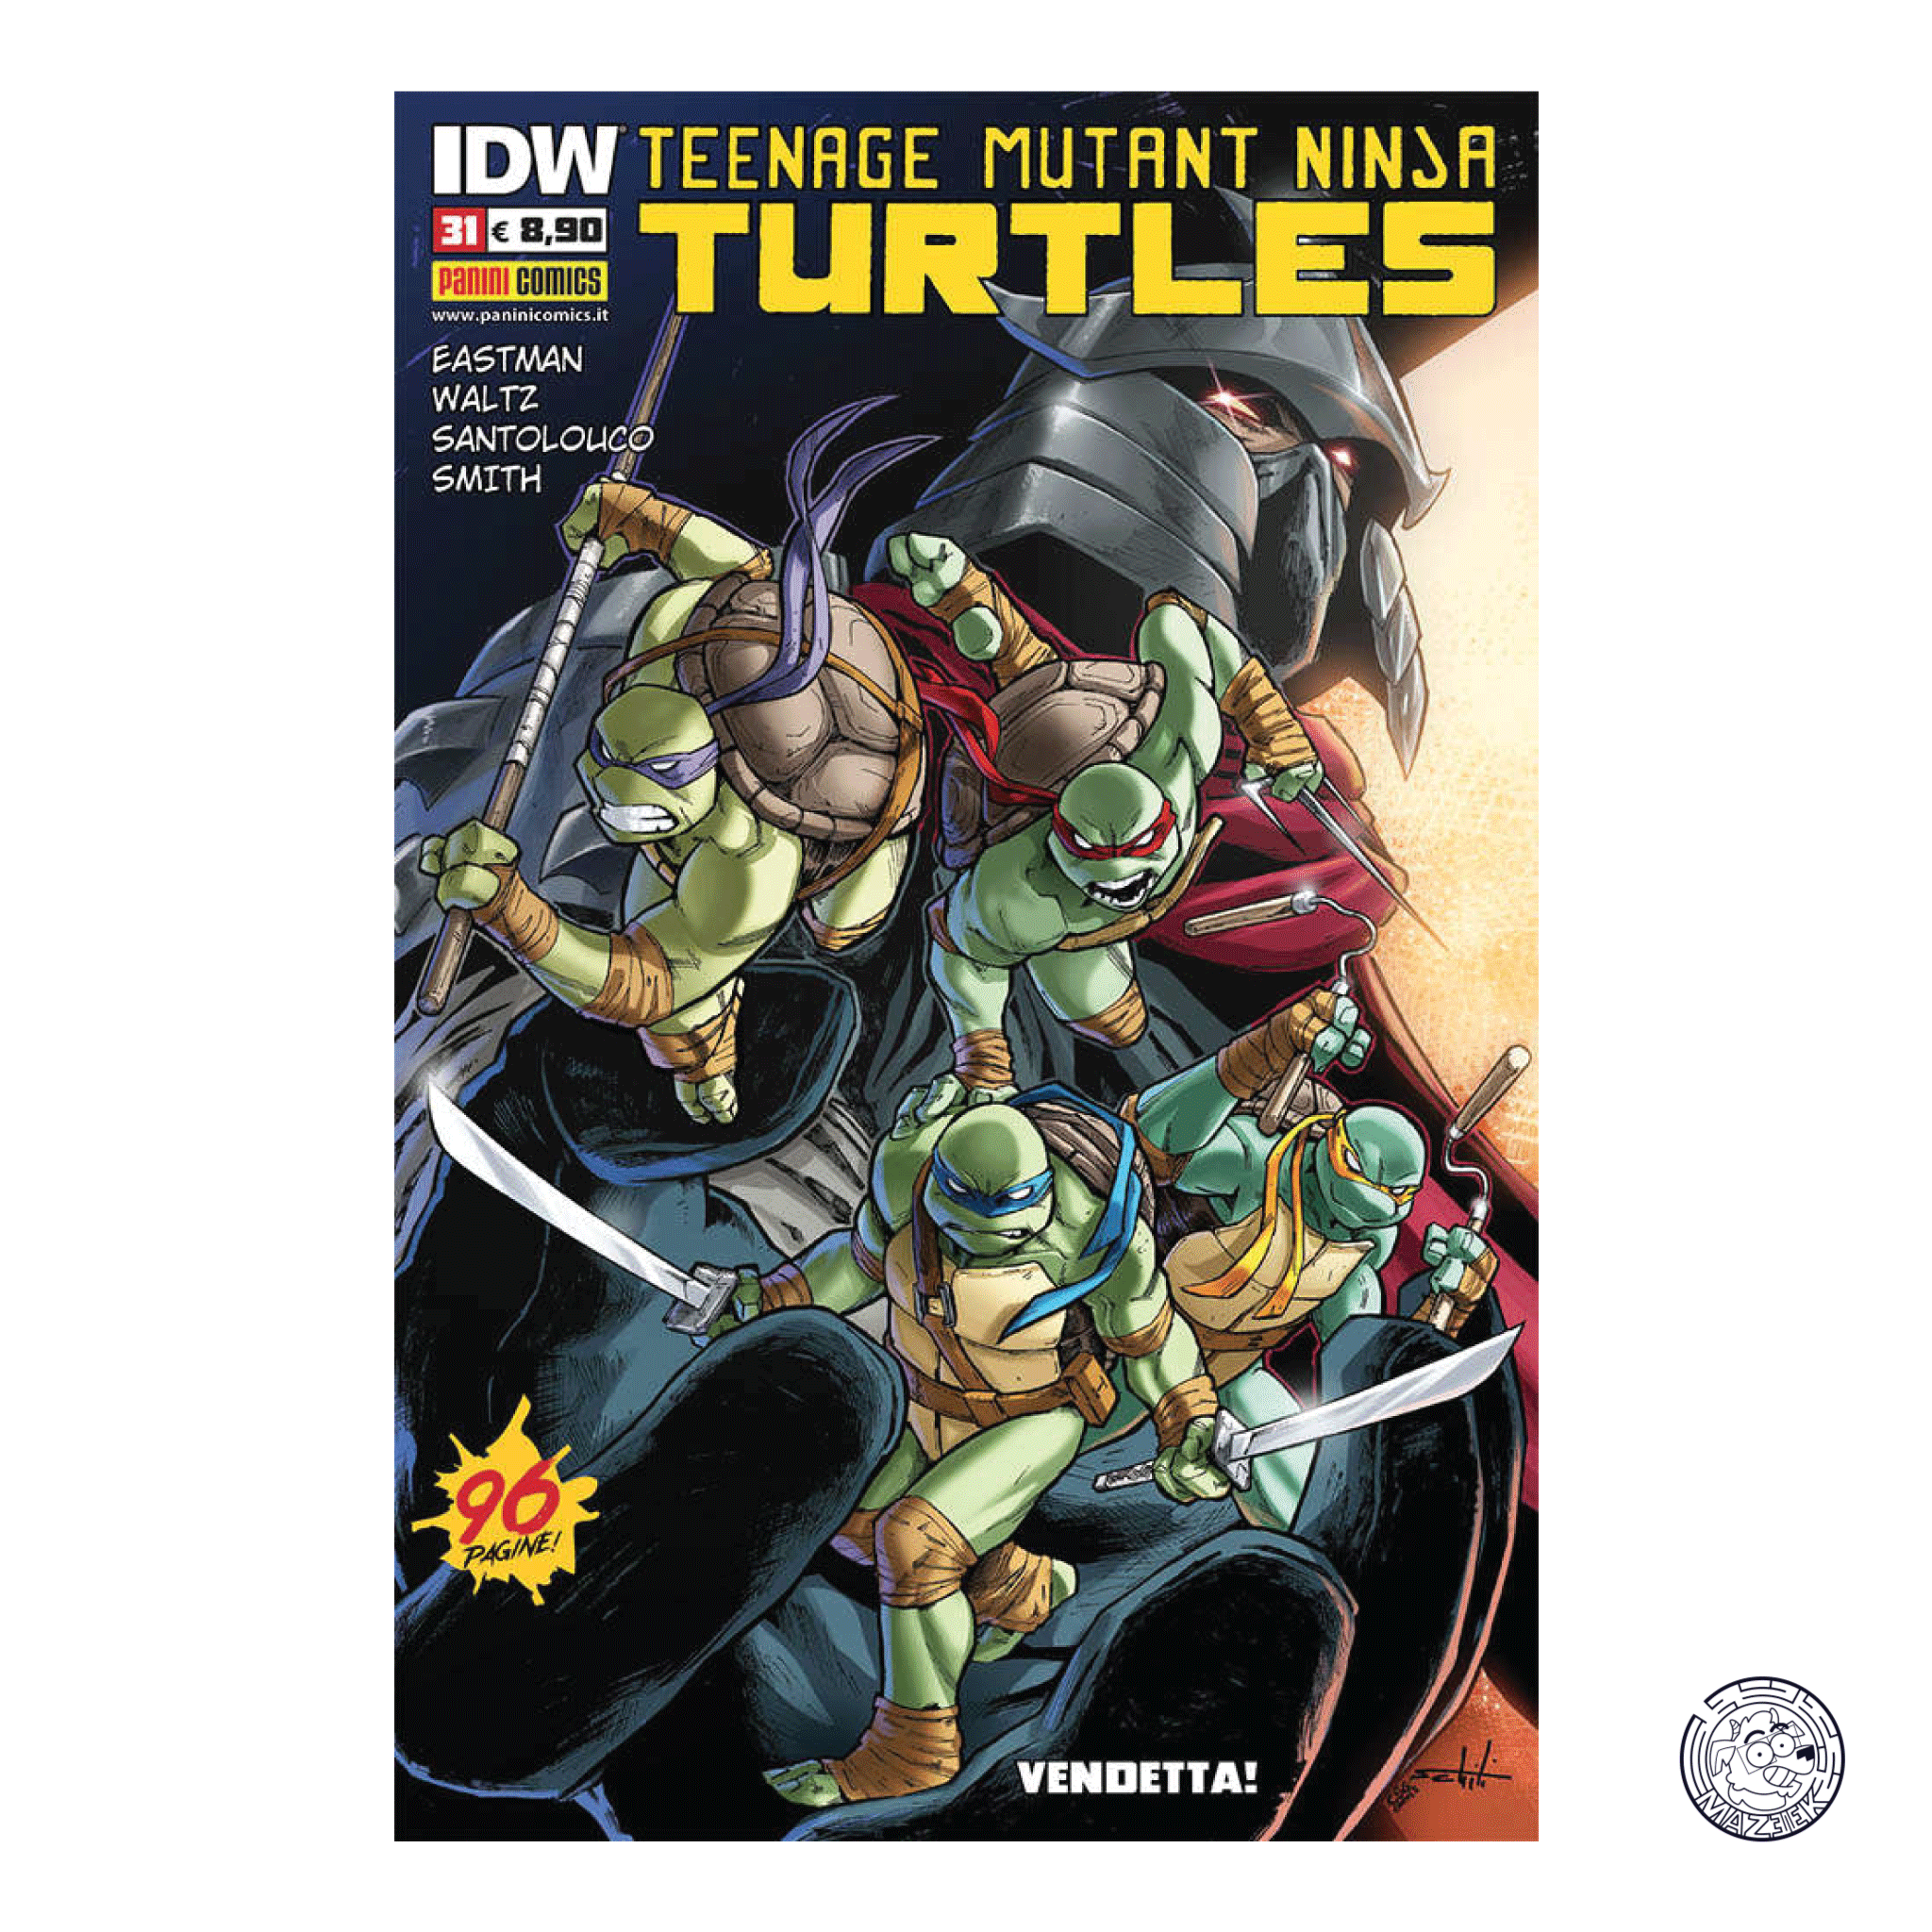 Teenage Mutant Ninja Turtles 31